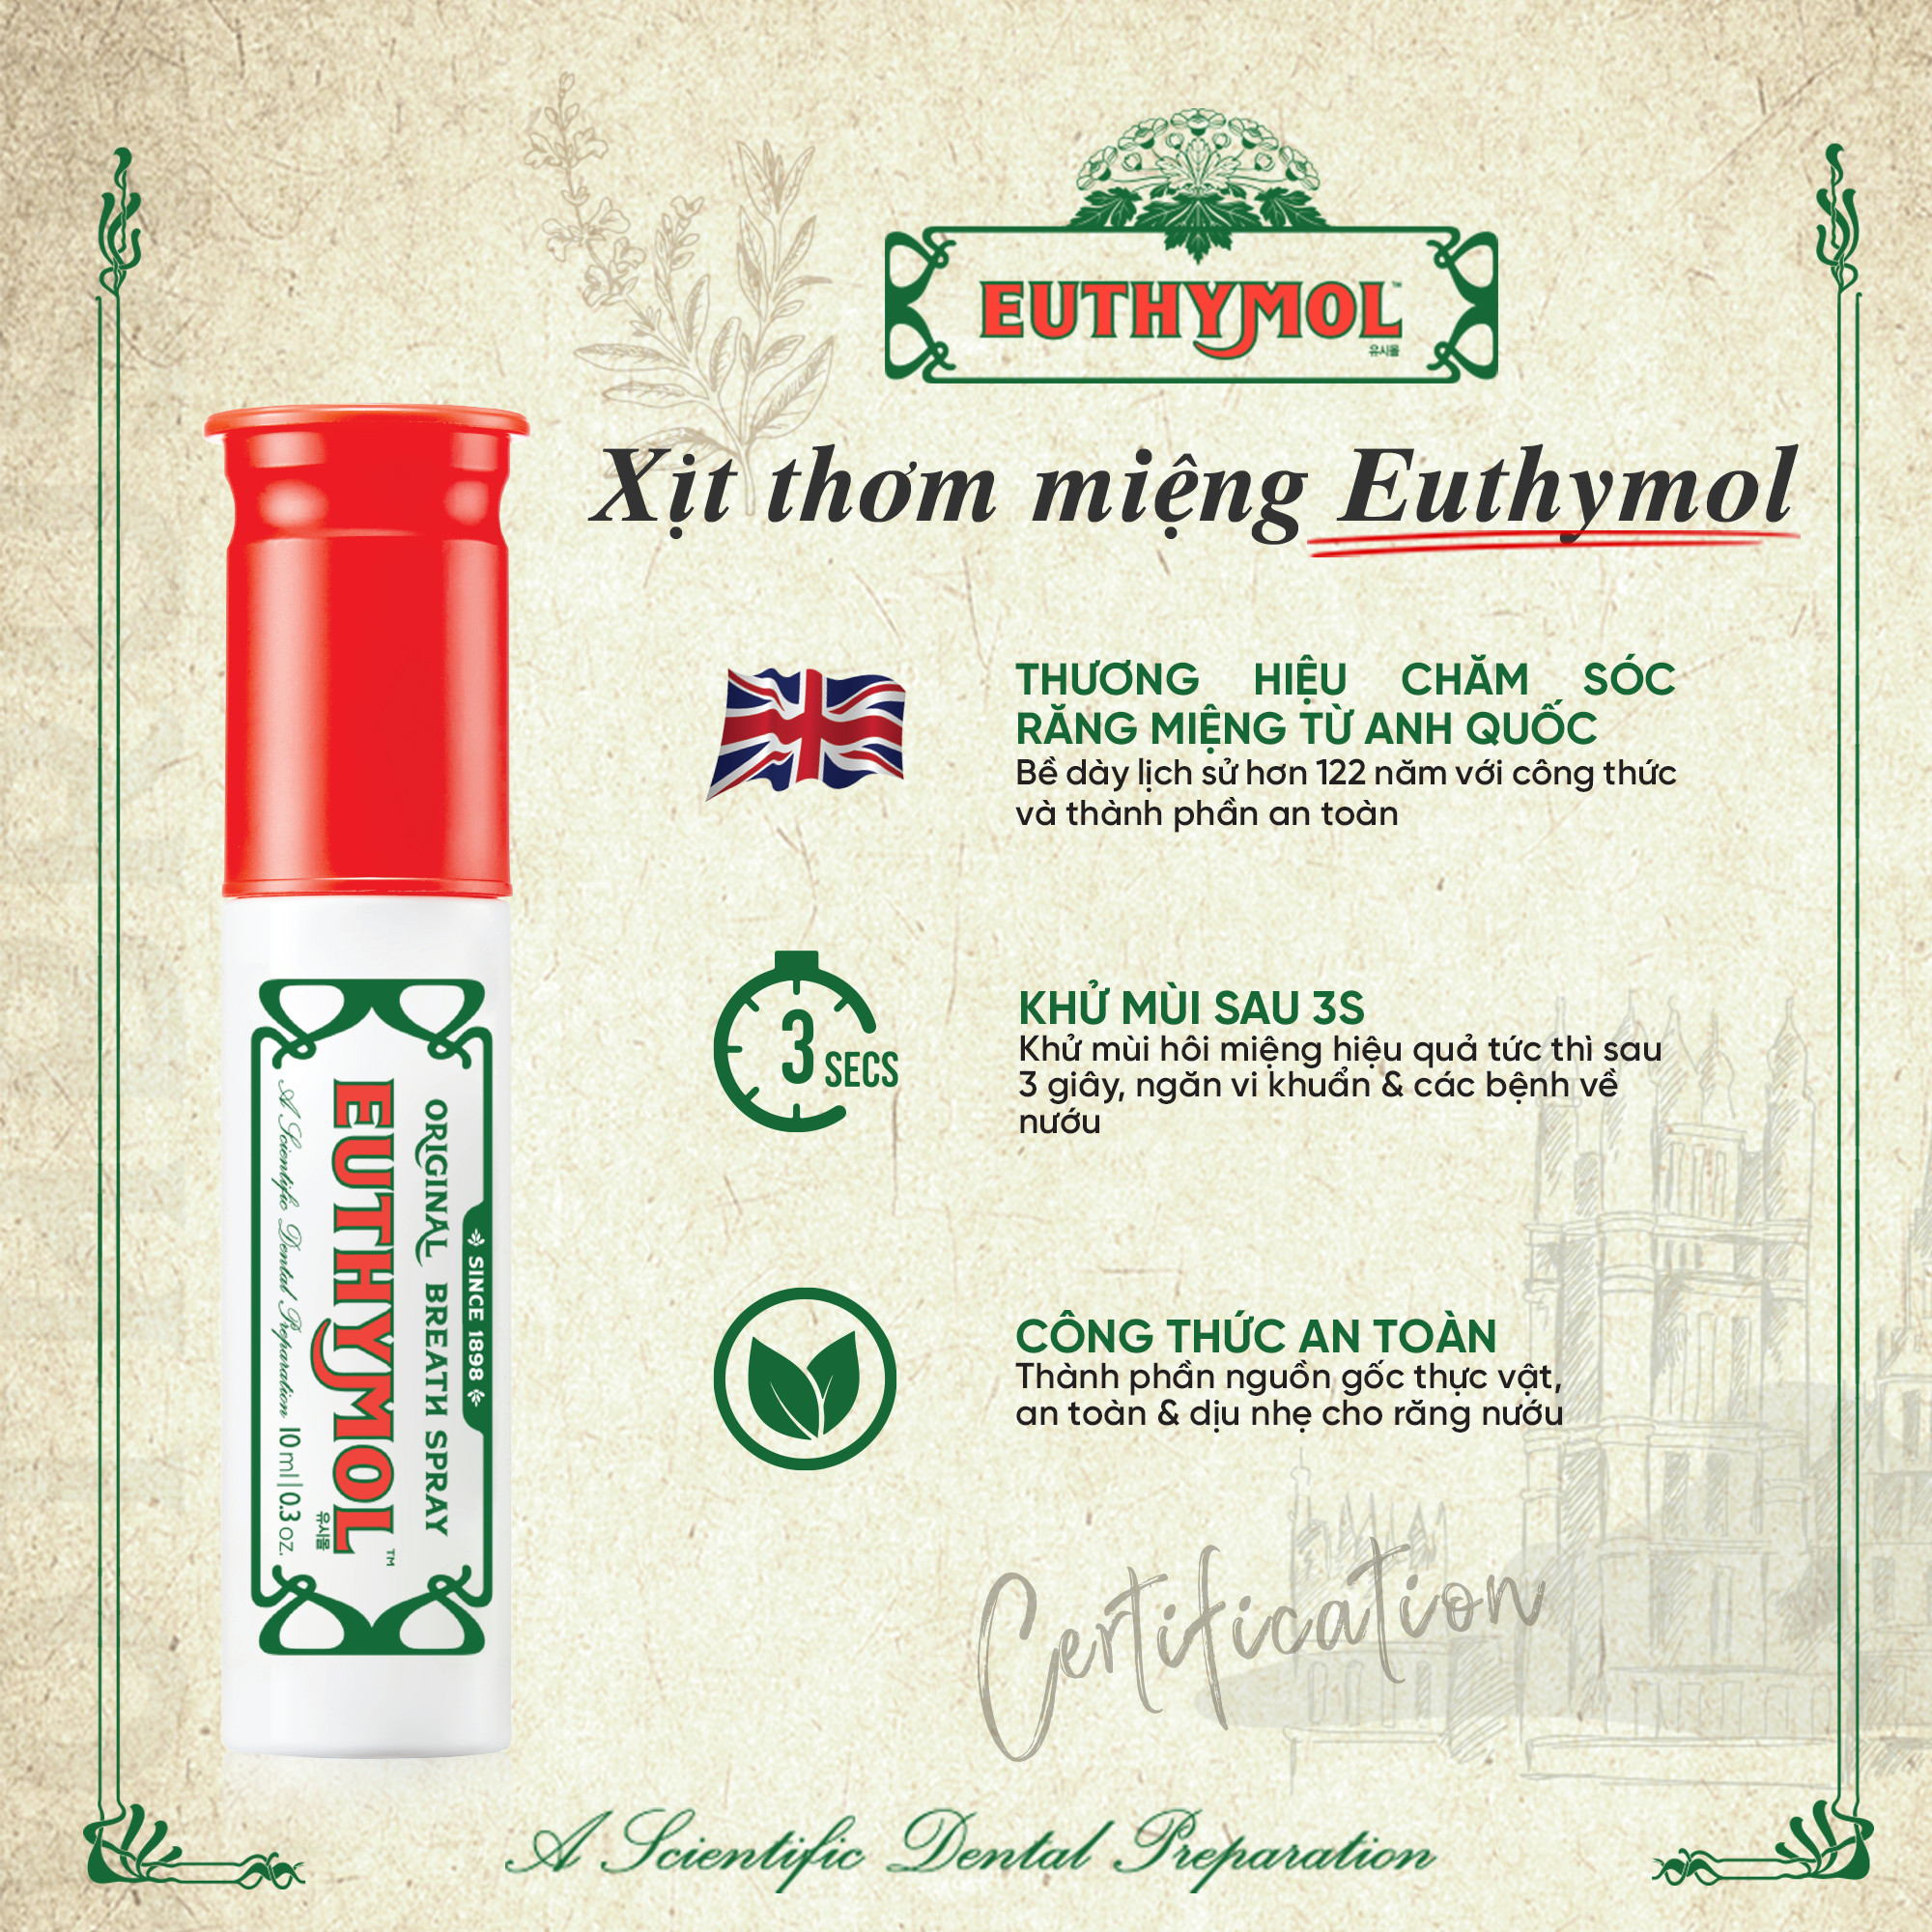 Euthymol Original Breath Spray